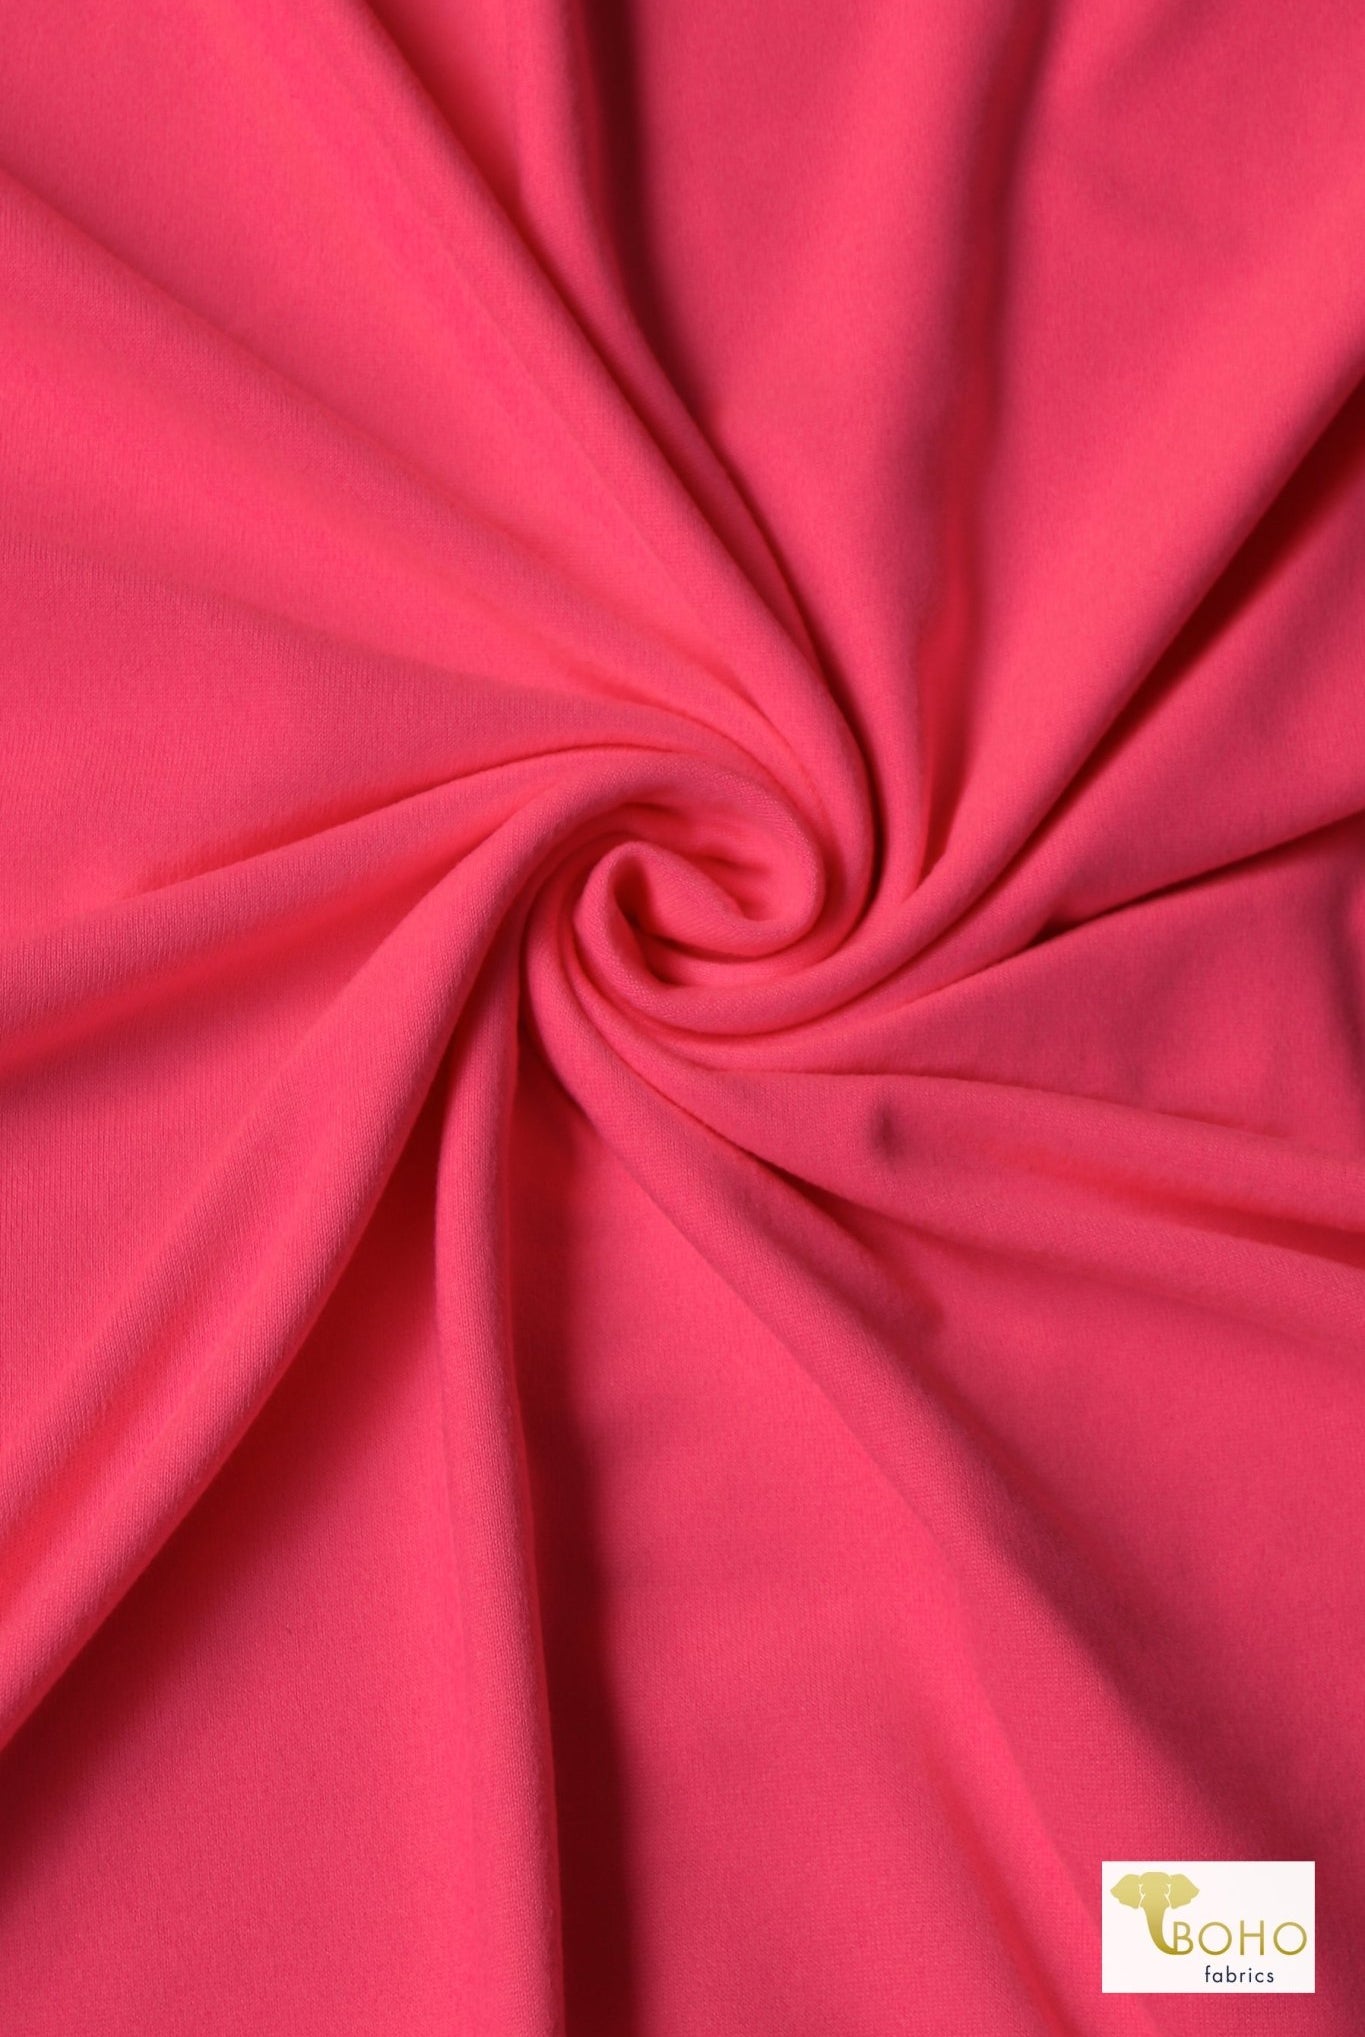 Coraline Pink, Athletic Knit - Boho Fabrics